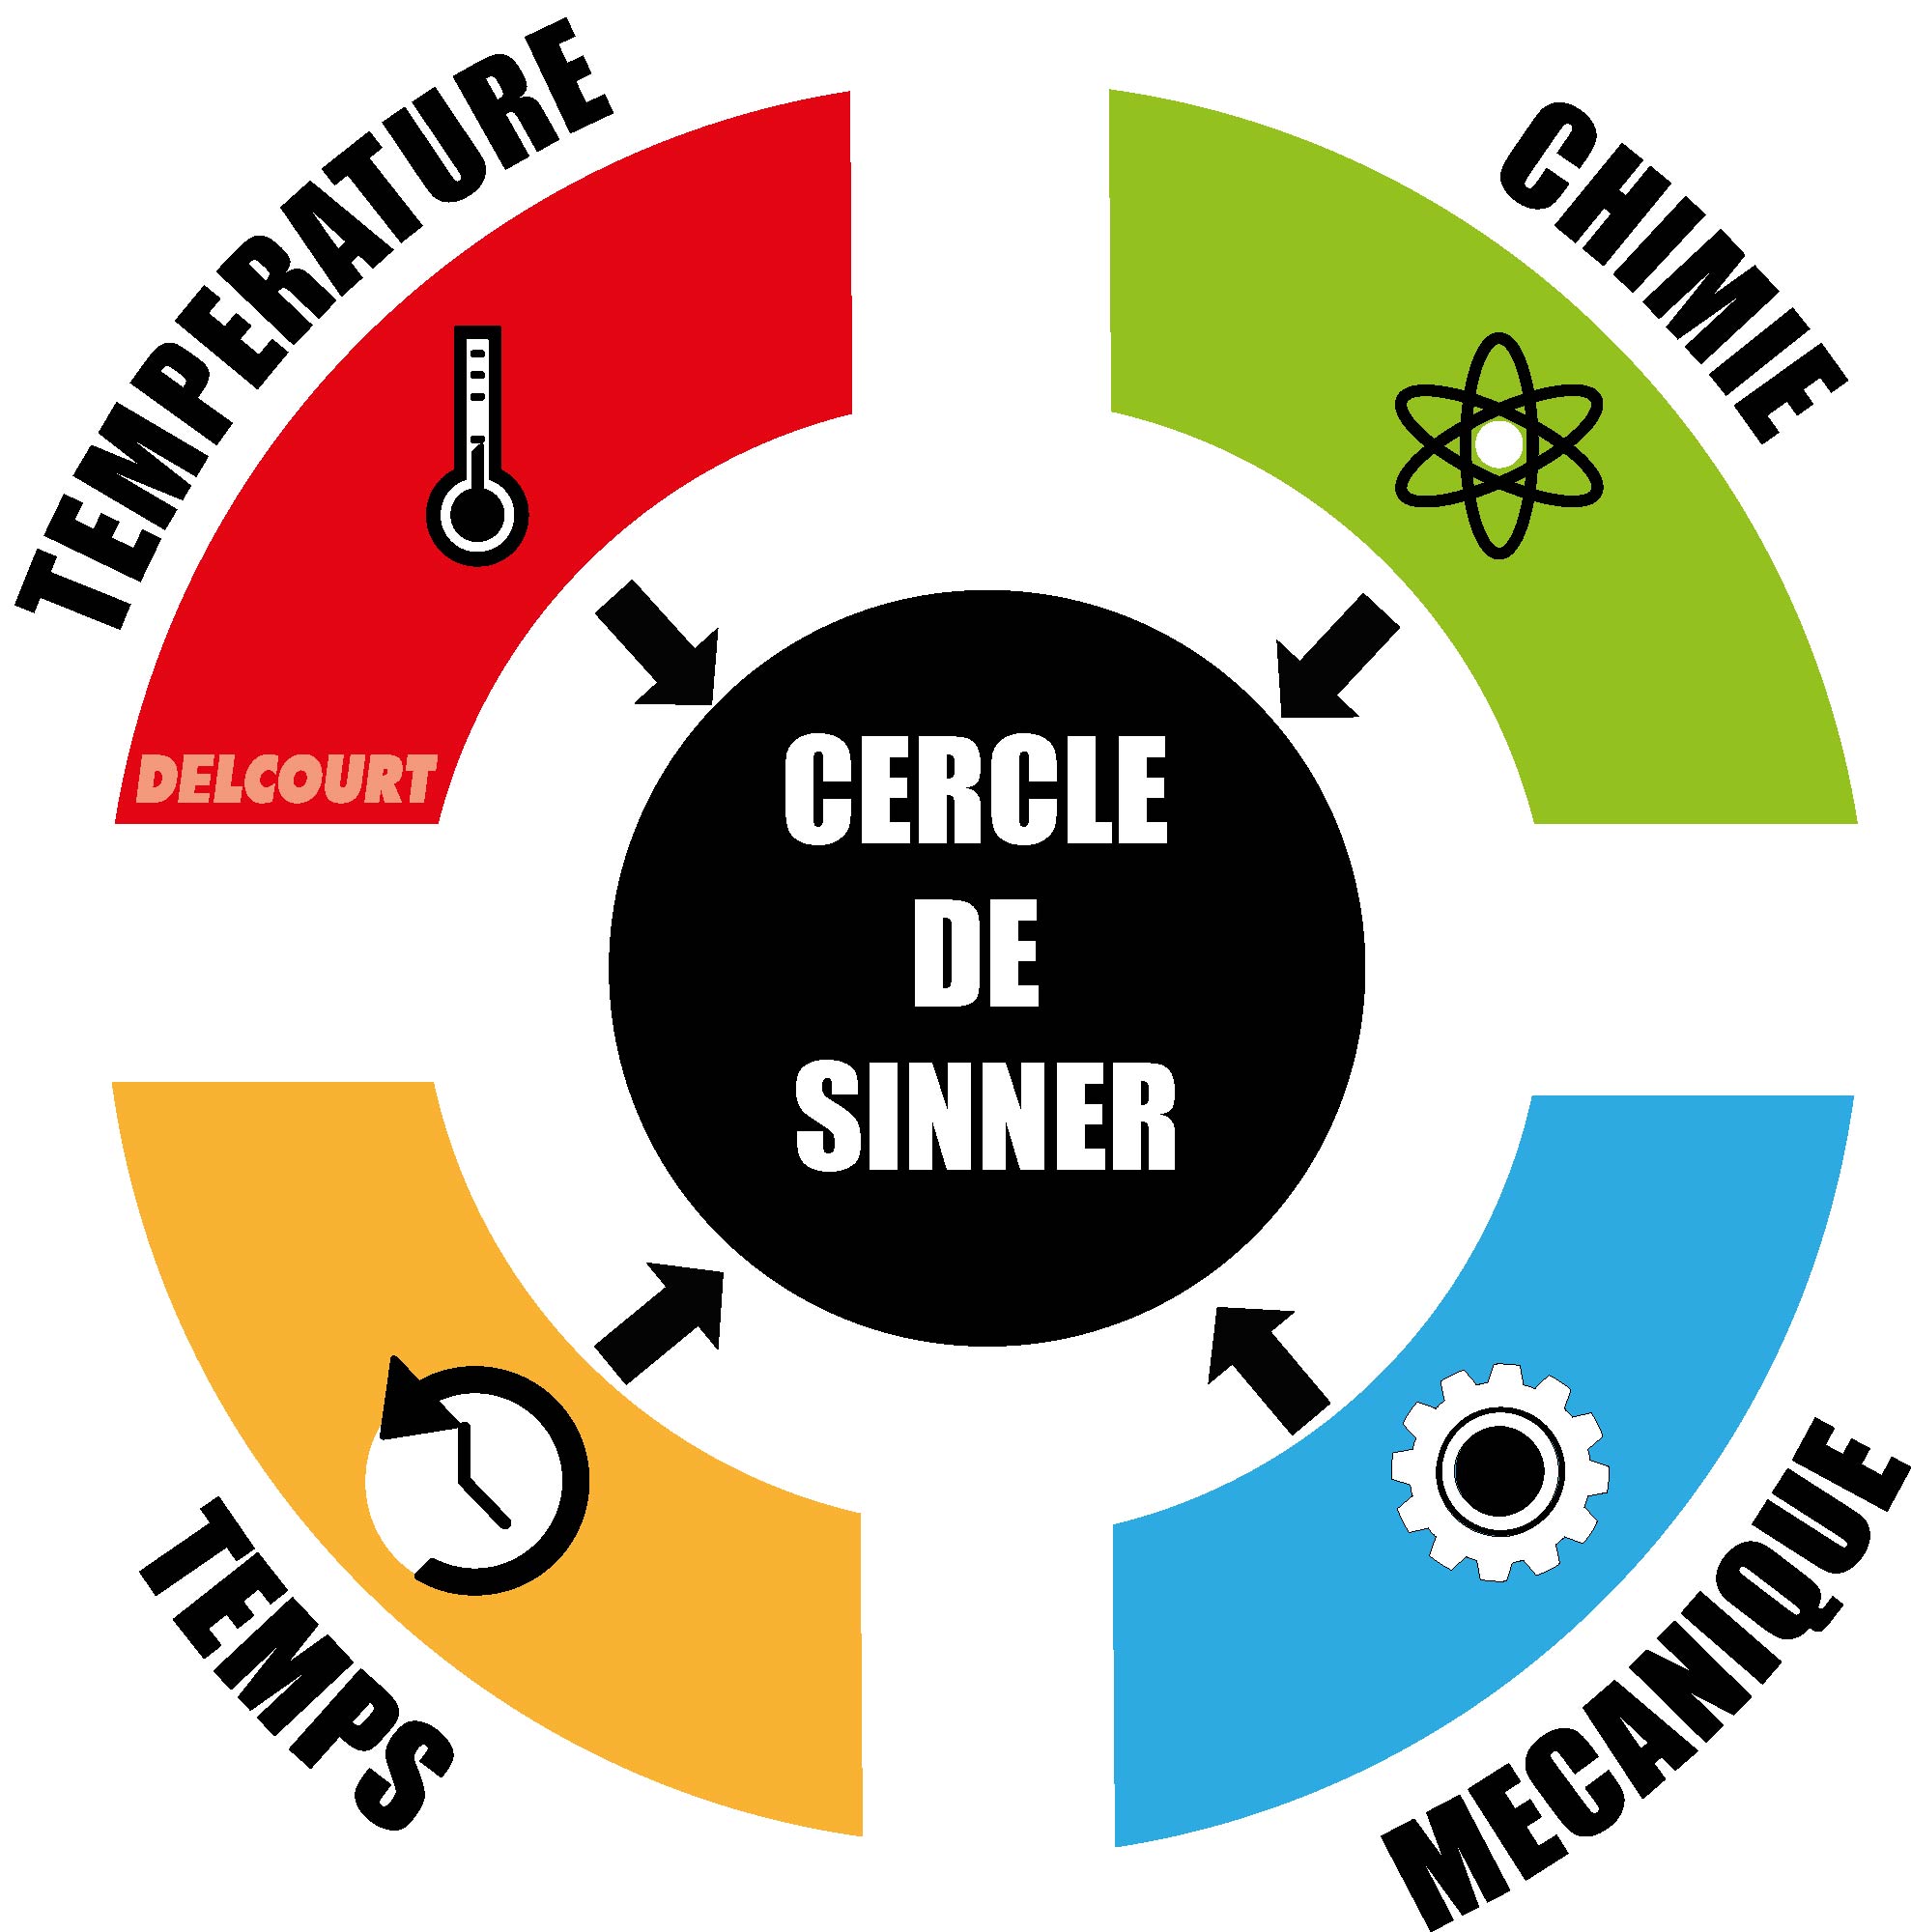 Le cercle de Sinner : la définition